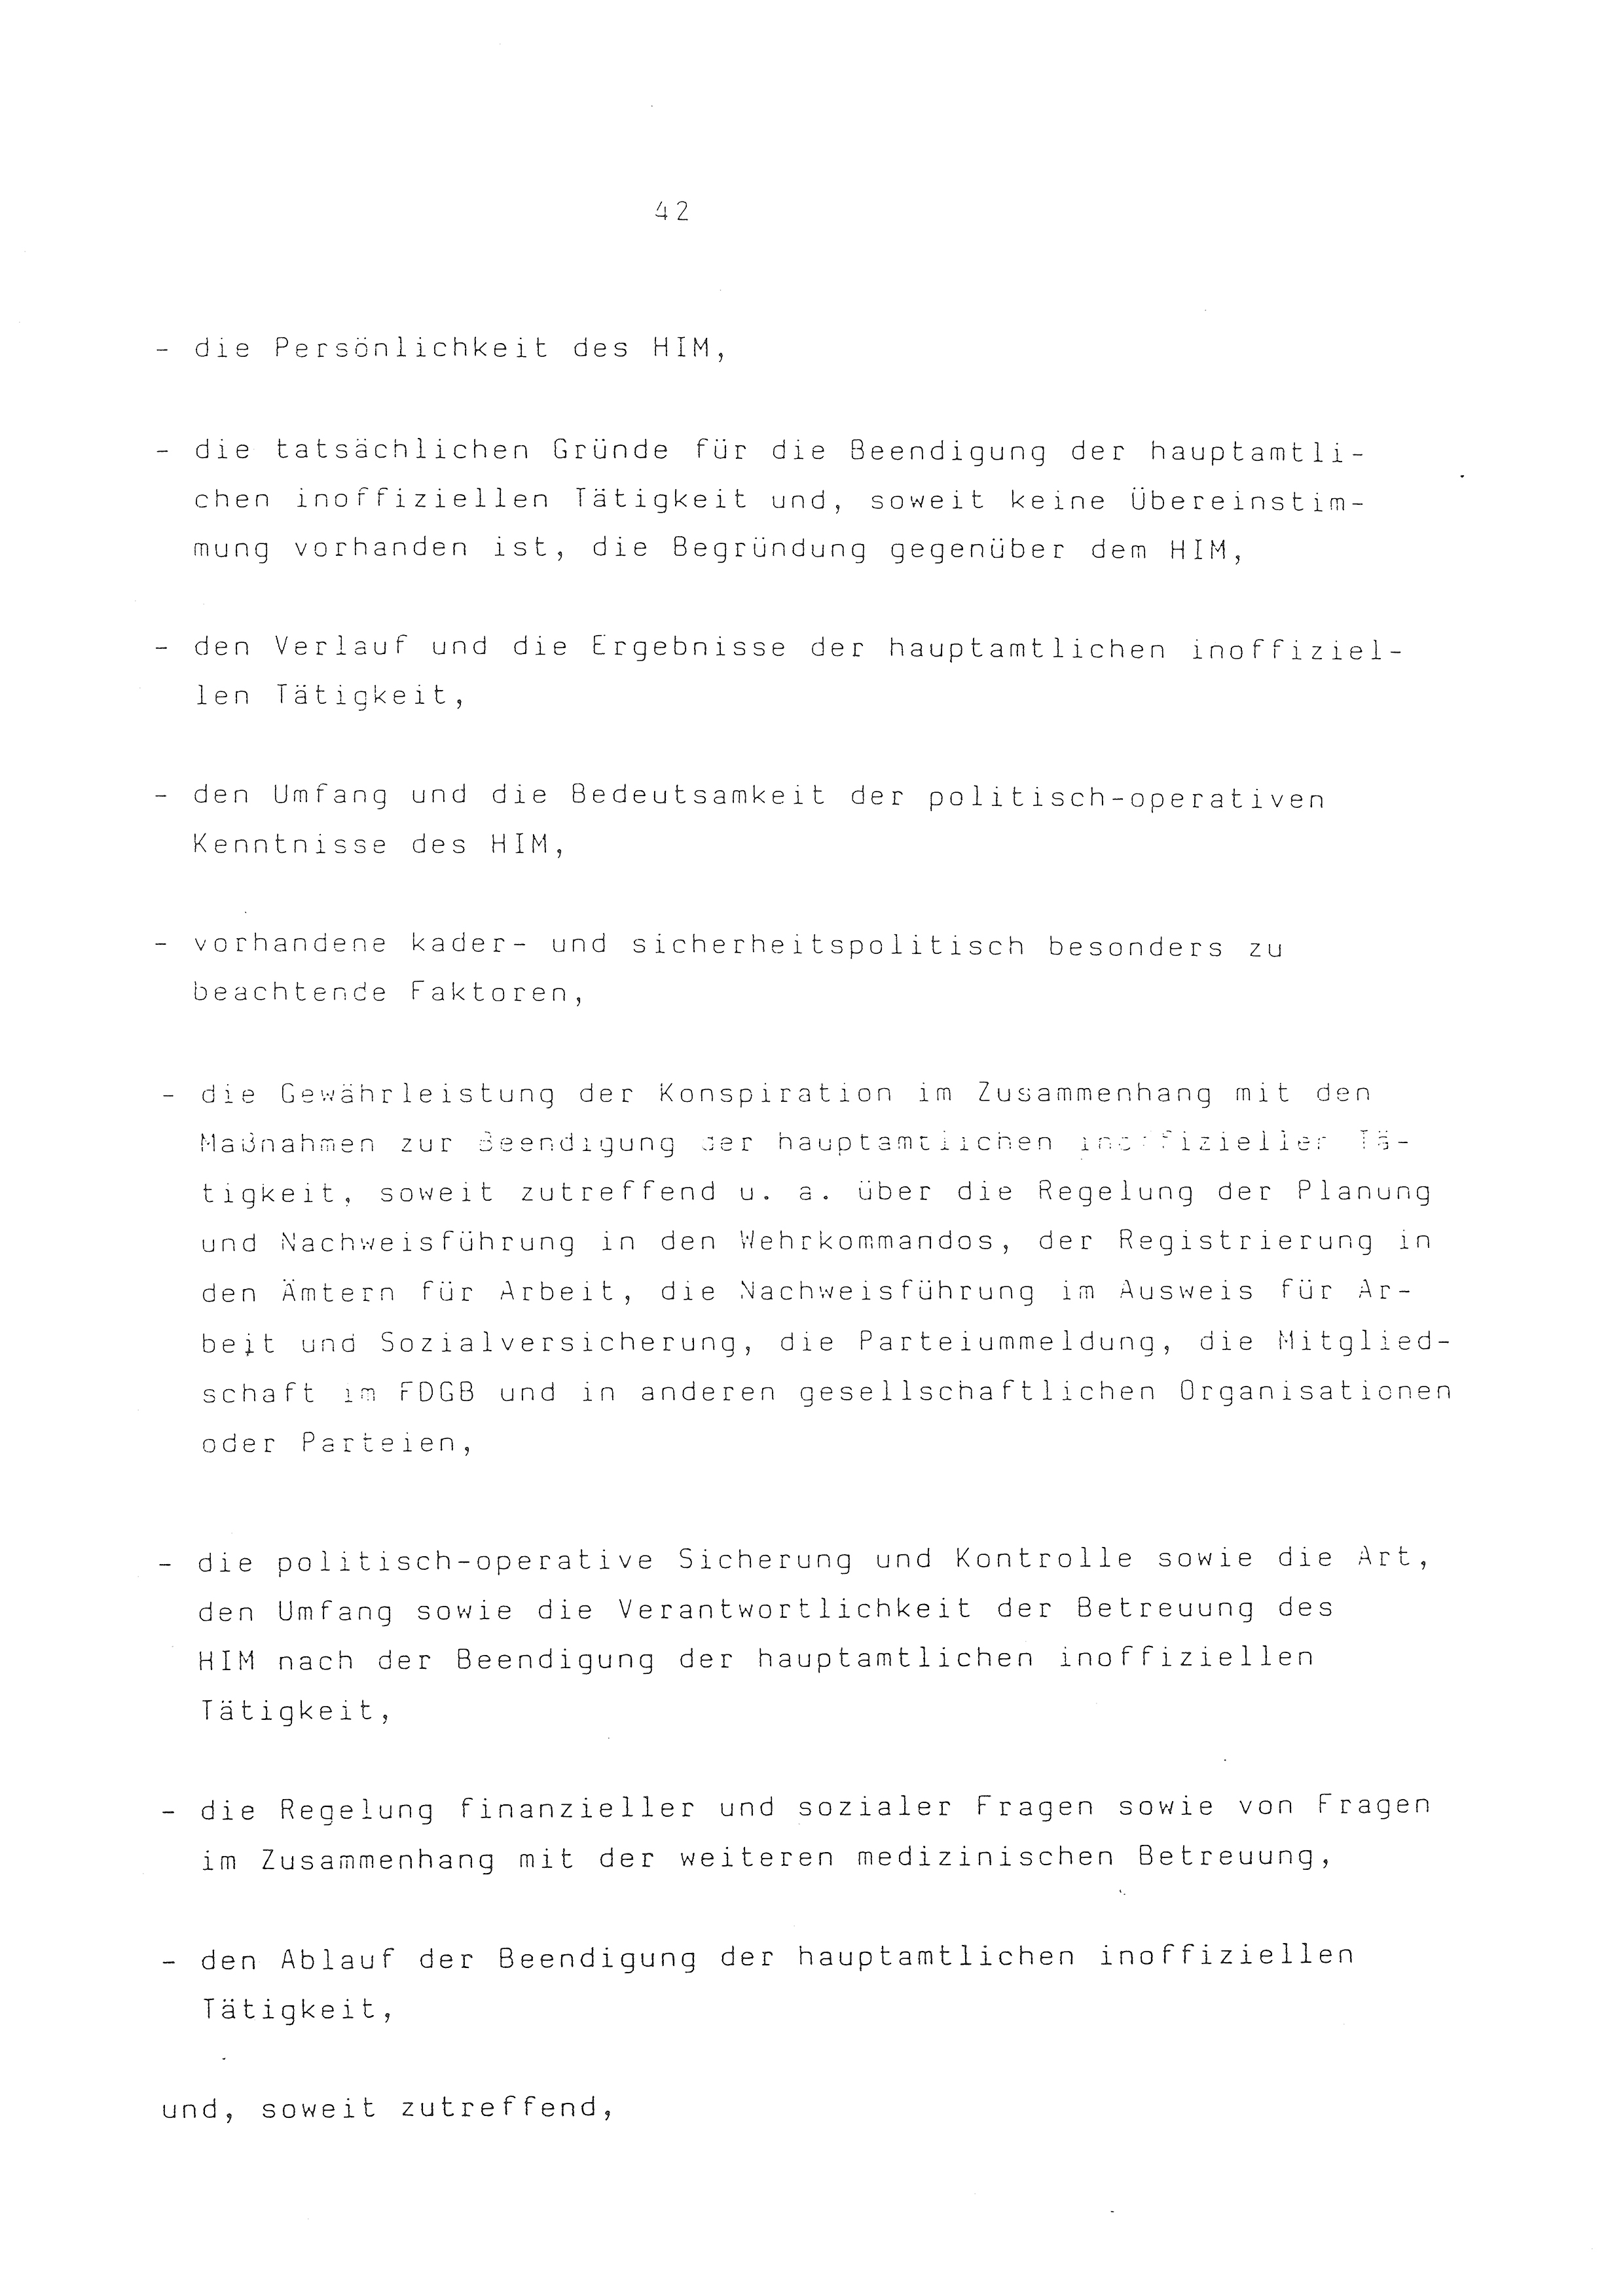 2. Durchführungsbestimmung zur Richtlinie 1/79 über die Arbeit mit hauptamtlichen Mitarbeitern des MfS (HIM), Deutsche Demokratische Republik (DDR), Ministerium für Staatssicherheit (MfS), Der Minister (Mielke), Geheime Verschlußsache (GVS) ooo8-44/86, Berlin 1986, Seite 42 (2. DB RL 1/79 DDR MfS Min. GVS ooo8-44/86 1986, S. 42)